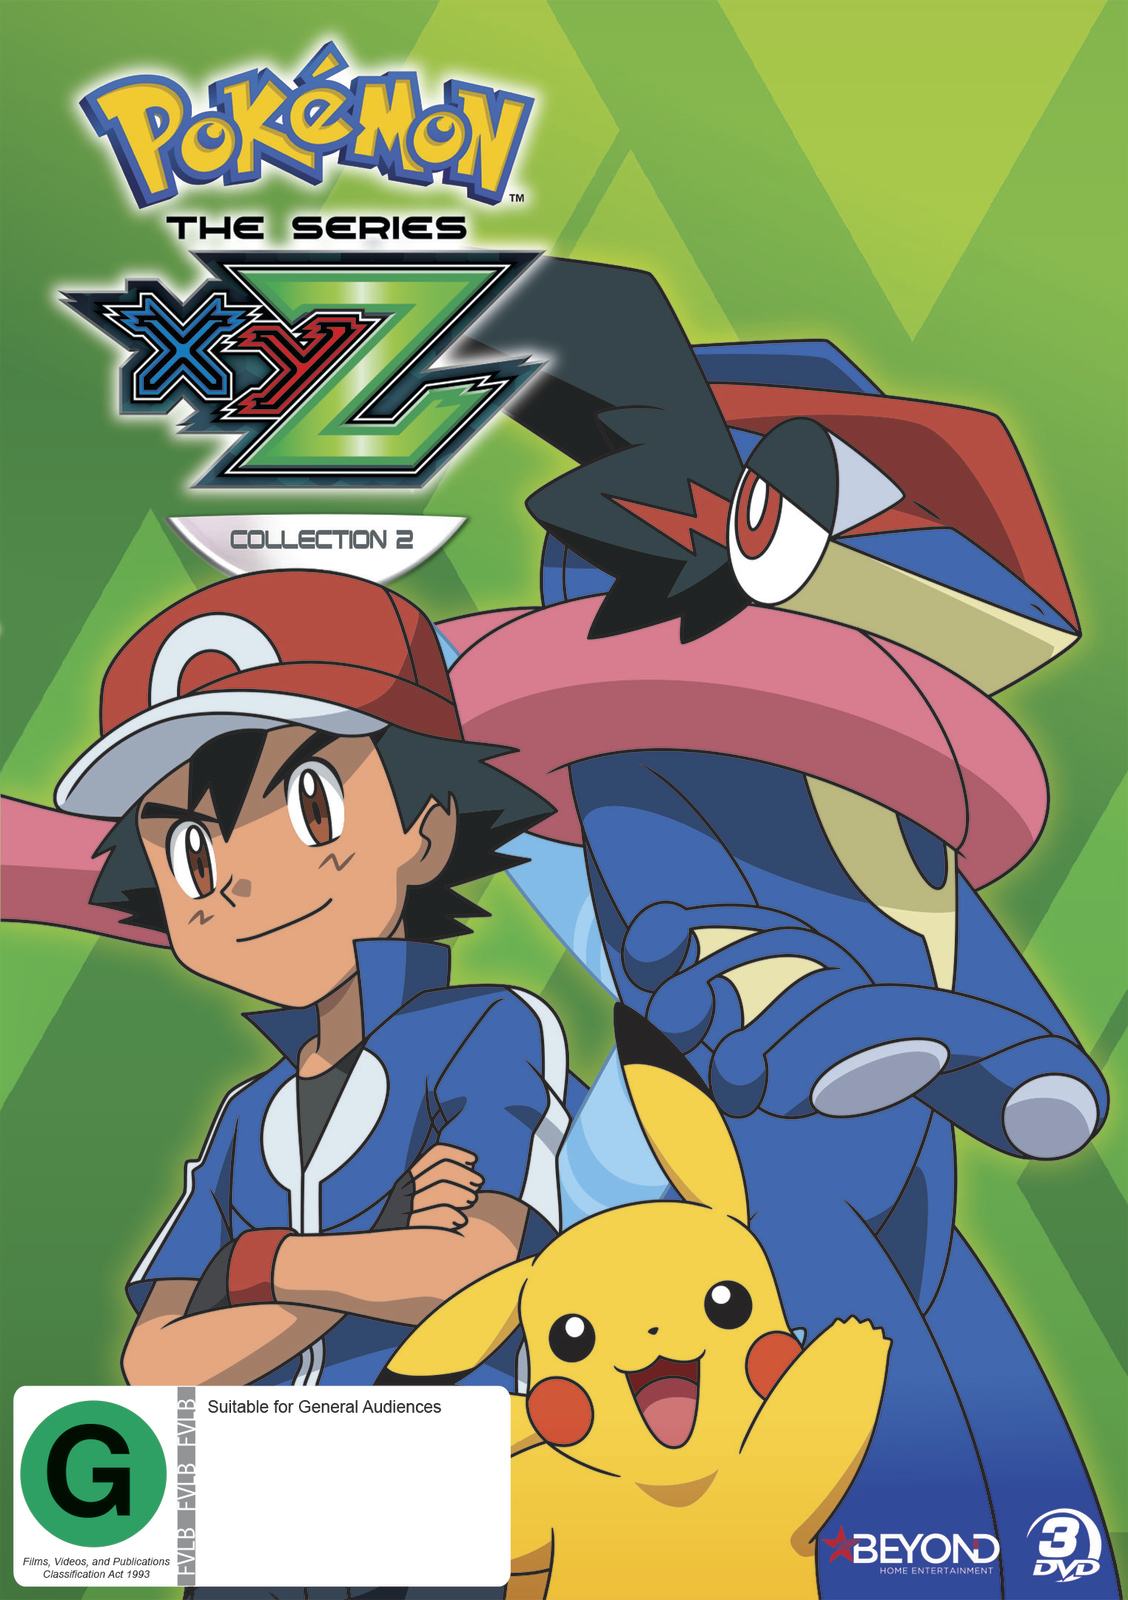 Pokémon the Series: XYZ - Wikipedia